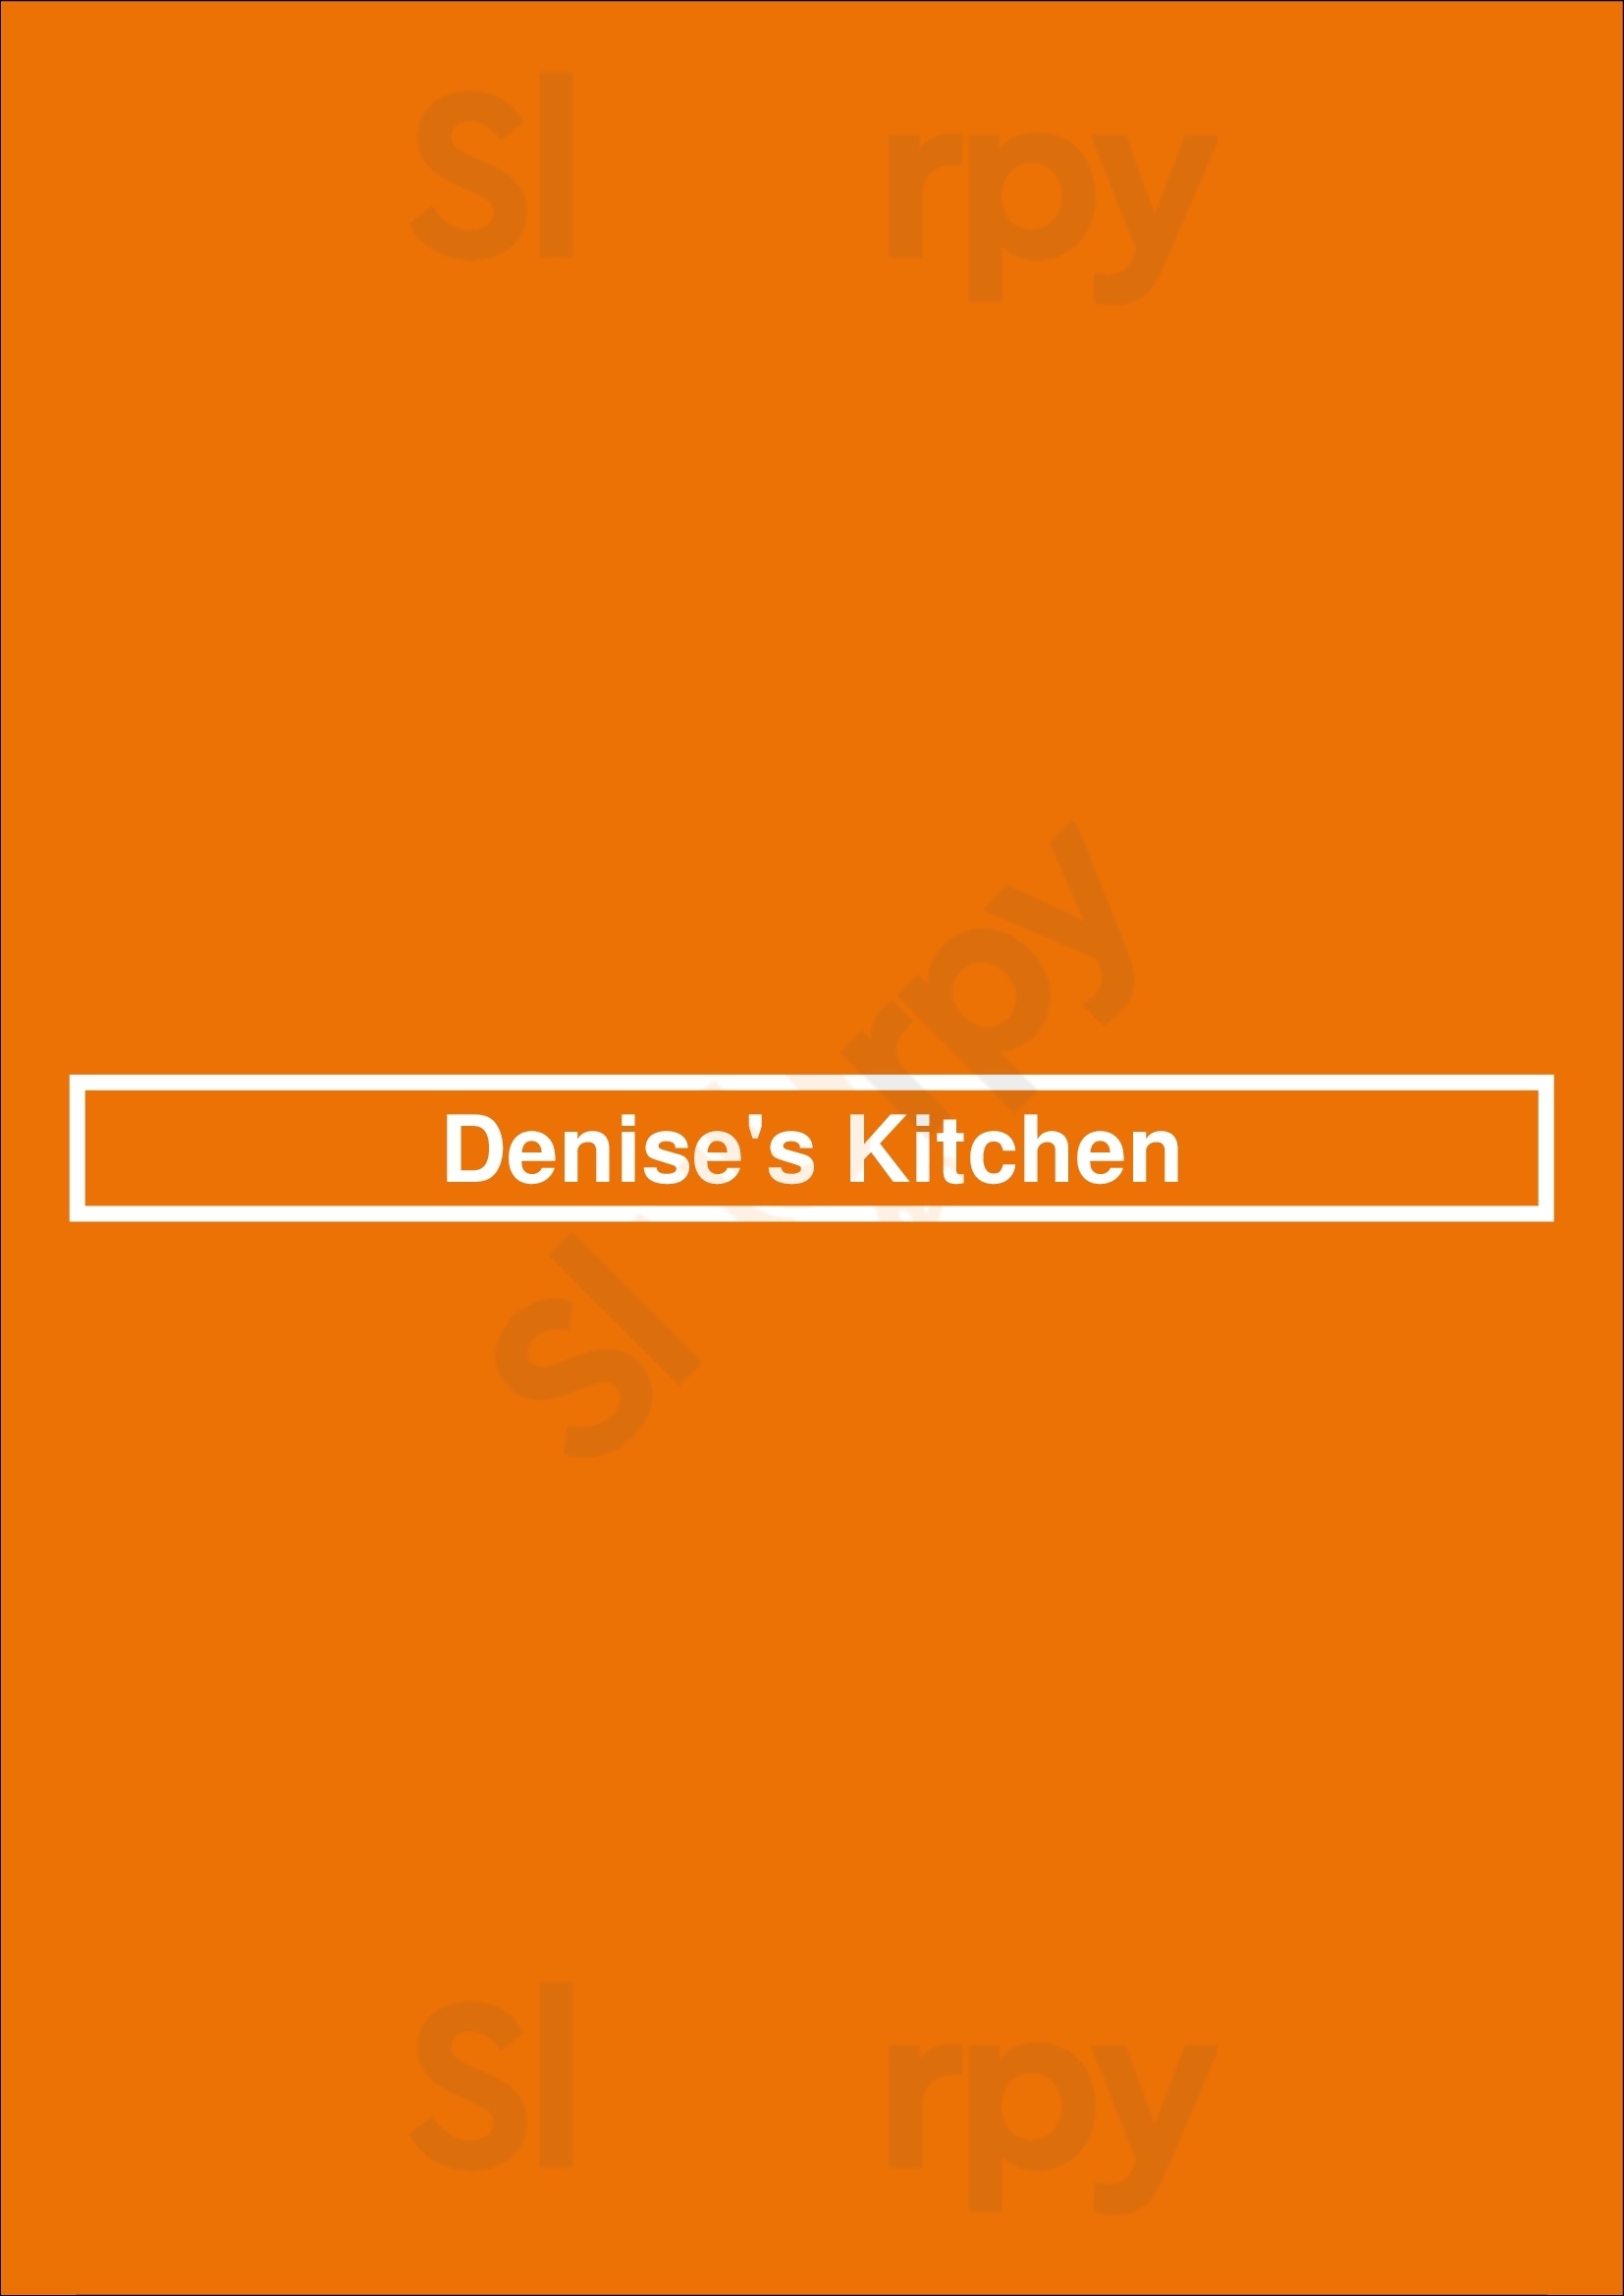 Denise's Kitchen Pompano Beach Menu - 1